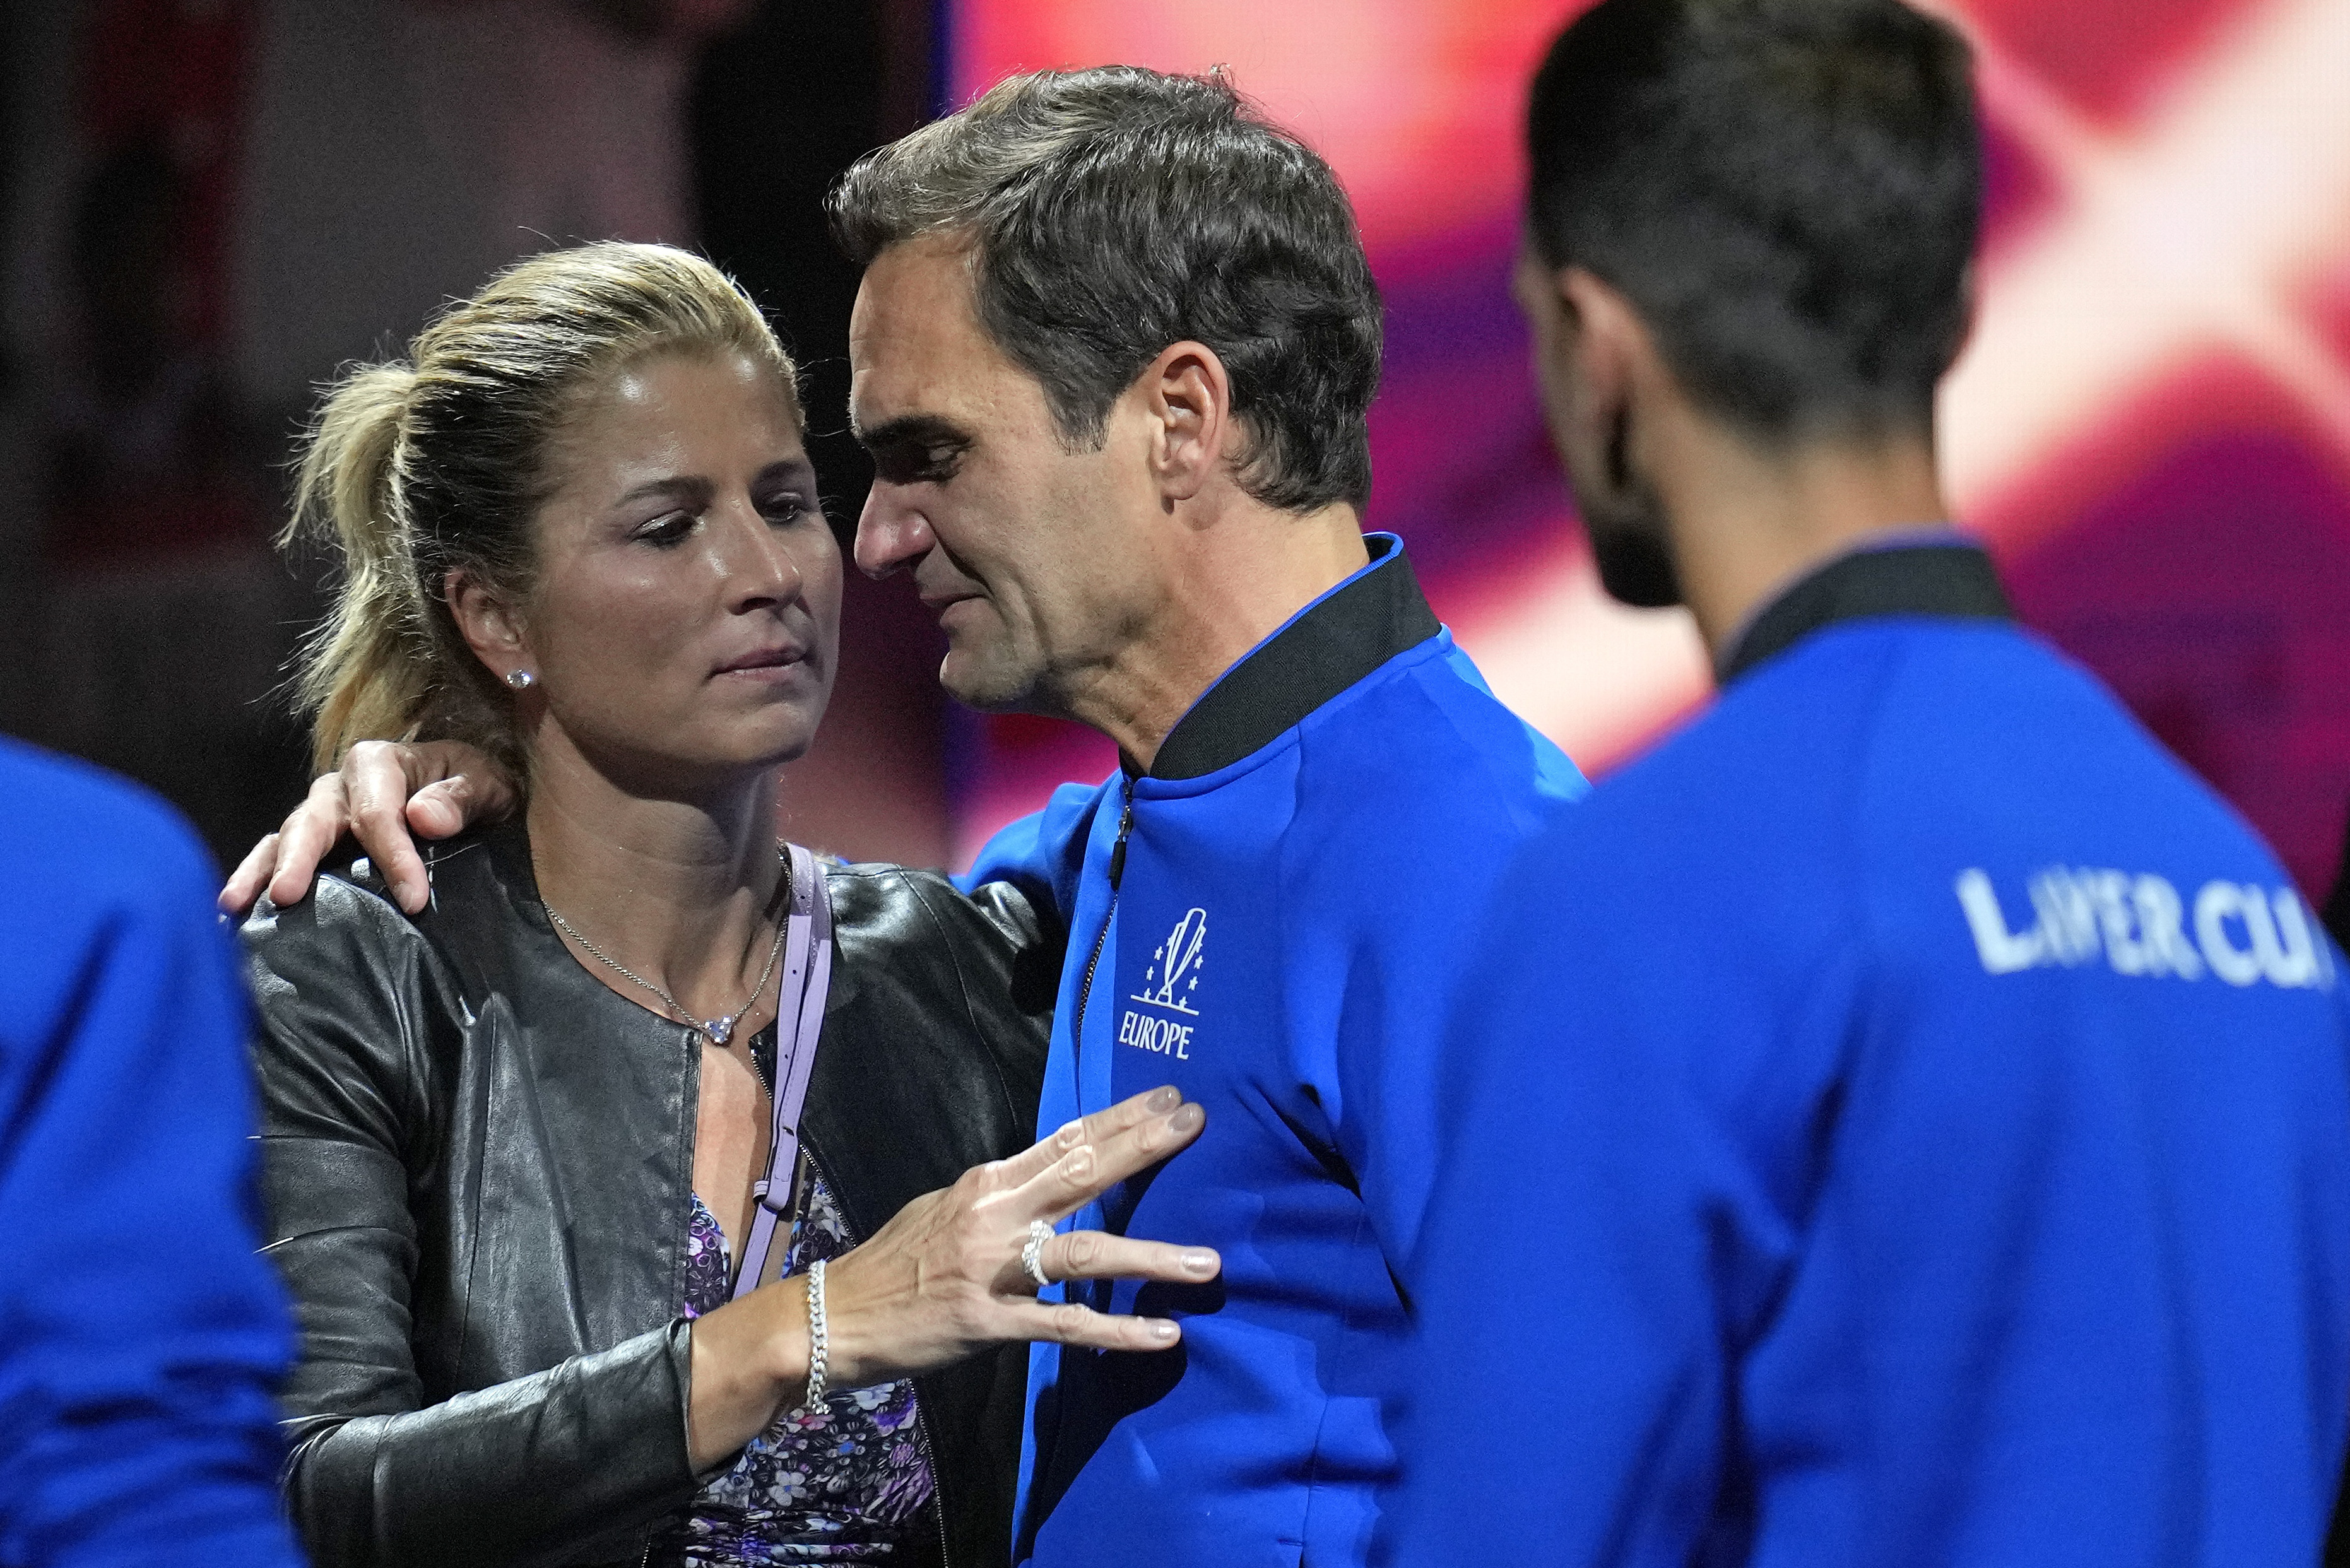 Mirka a admis que Federer lui manquerait en jouant au tennis